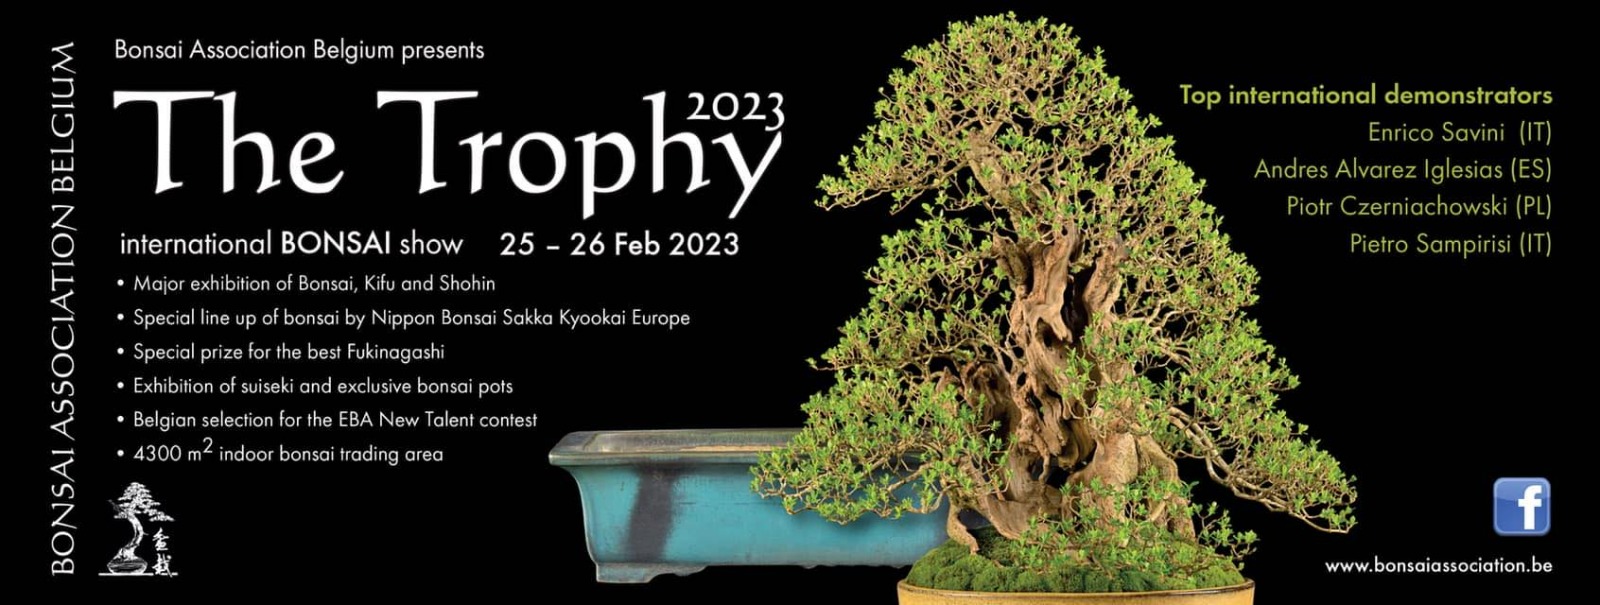 Nero Bonsai al “The Trophy” 2023